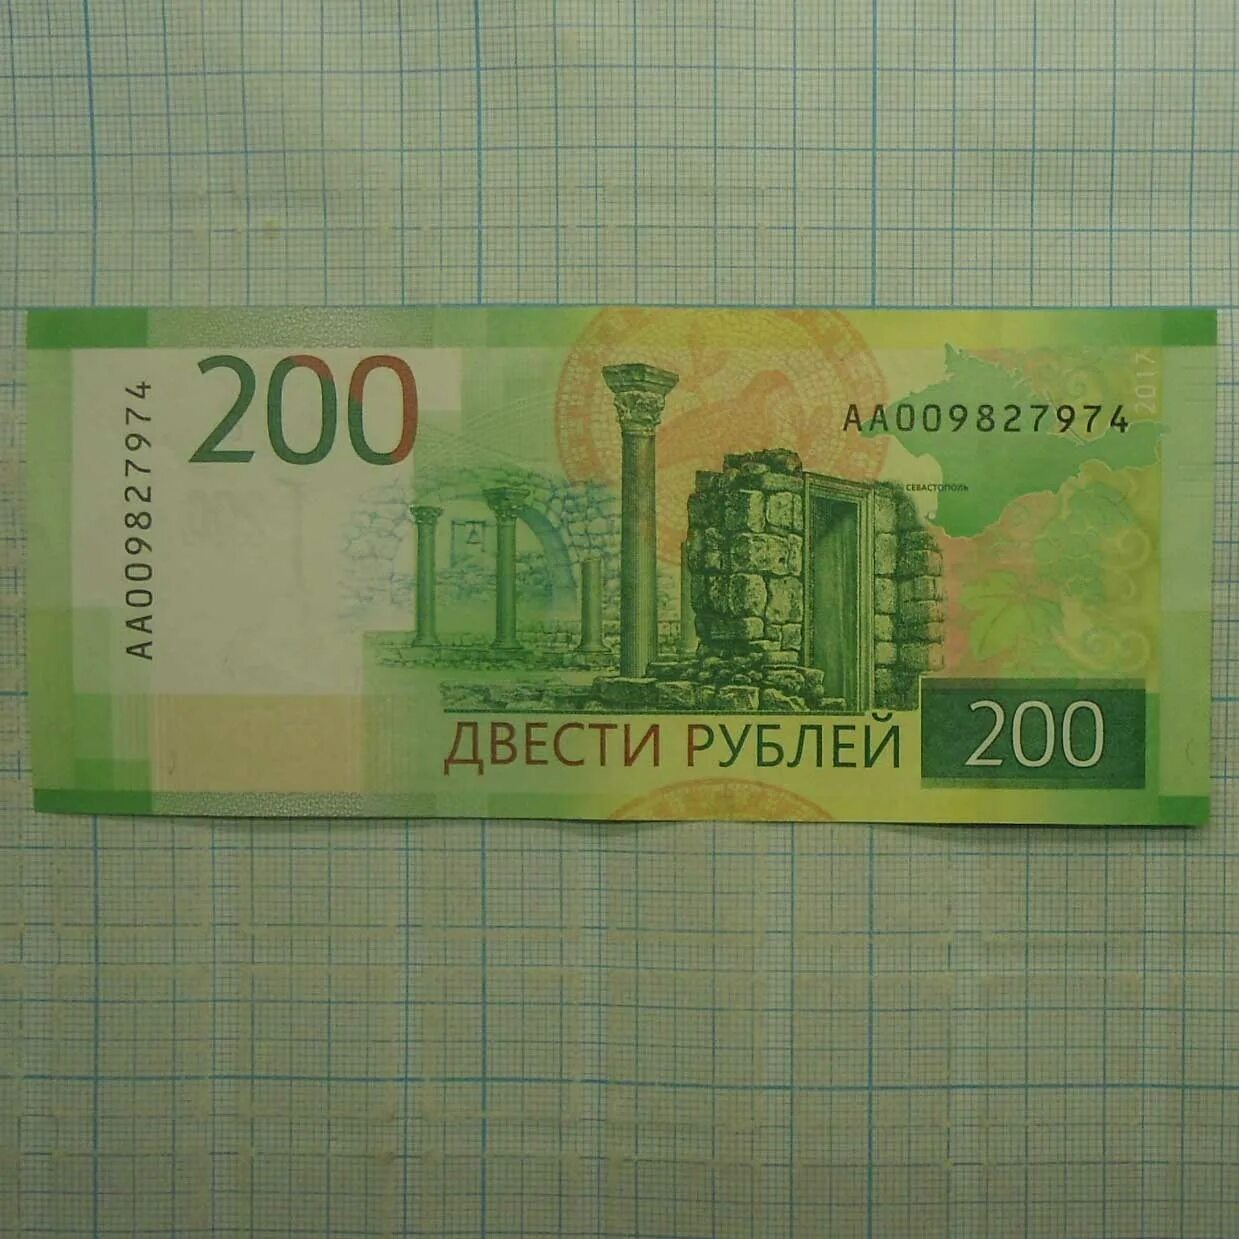 21 200 рублей. 200 Рублей. Купюра 200 рублей. 200 Рублей банкнота. 200 Рублей 2017.